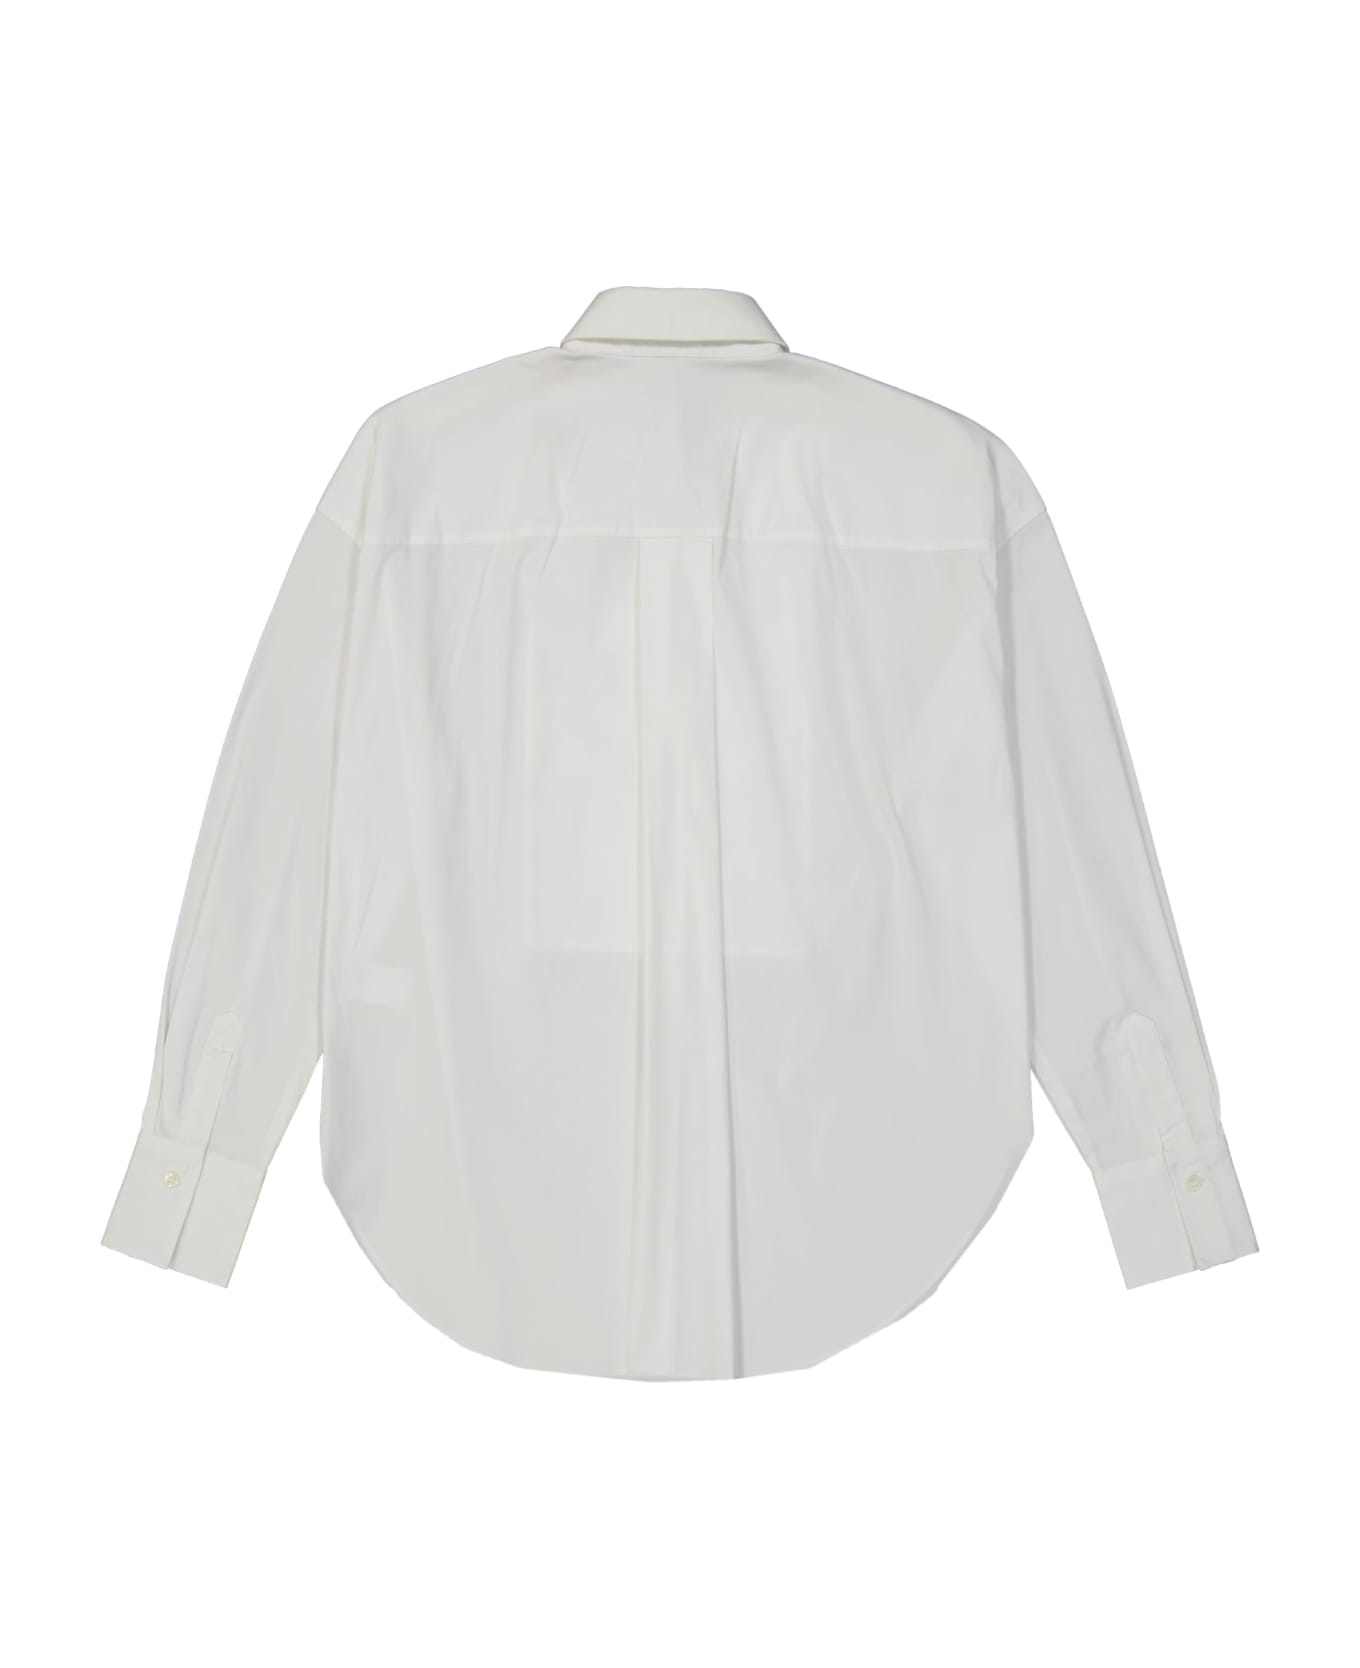 Brunello Cucinelli Cotton Shirt - White ブラウス